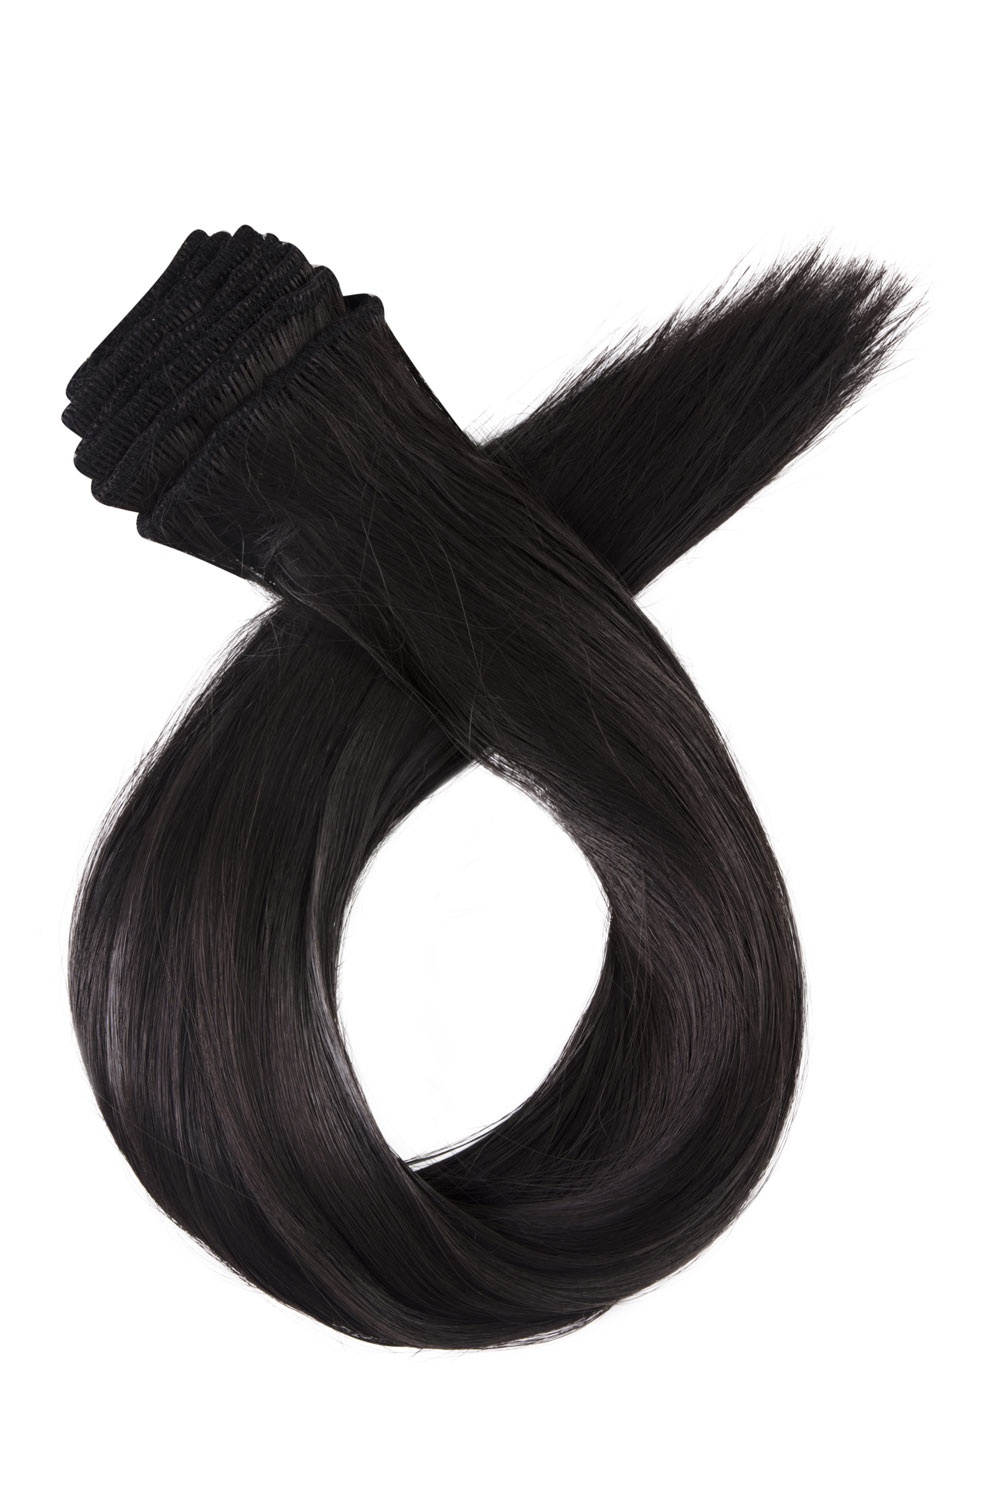 Stredne hnedé jednopásové vlasy, vlnité, 60cm, 115g, farba 4